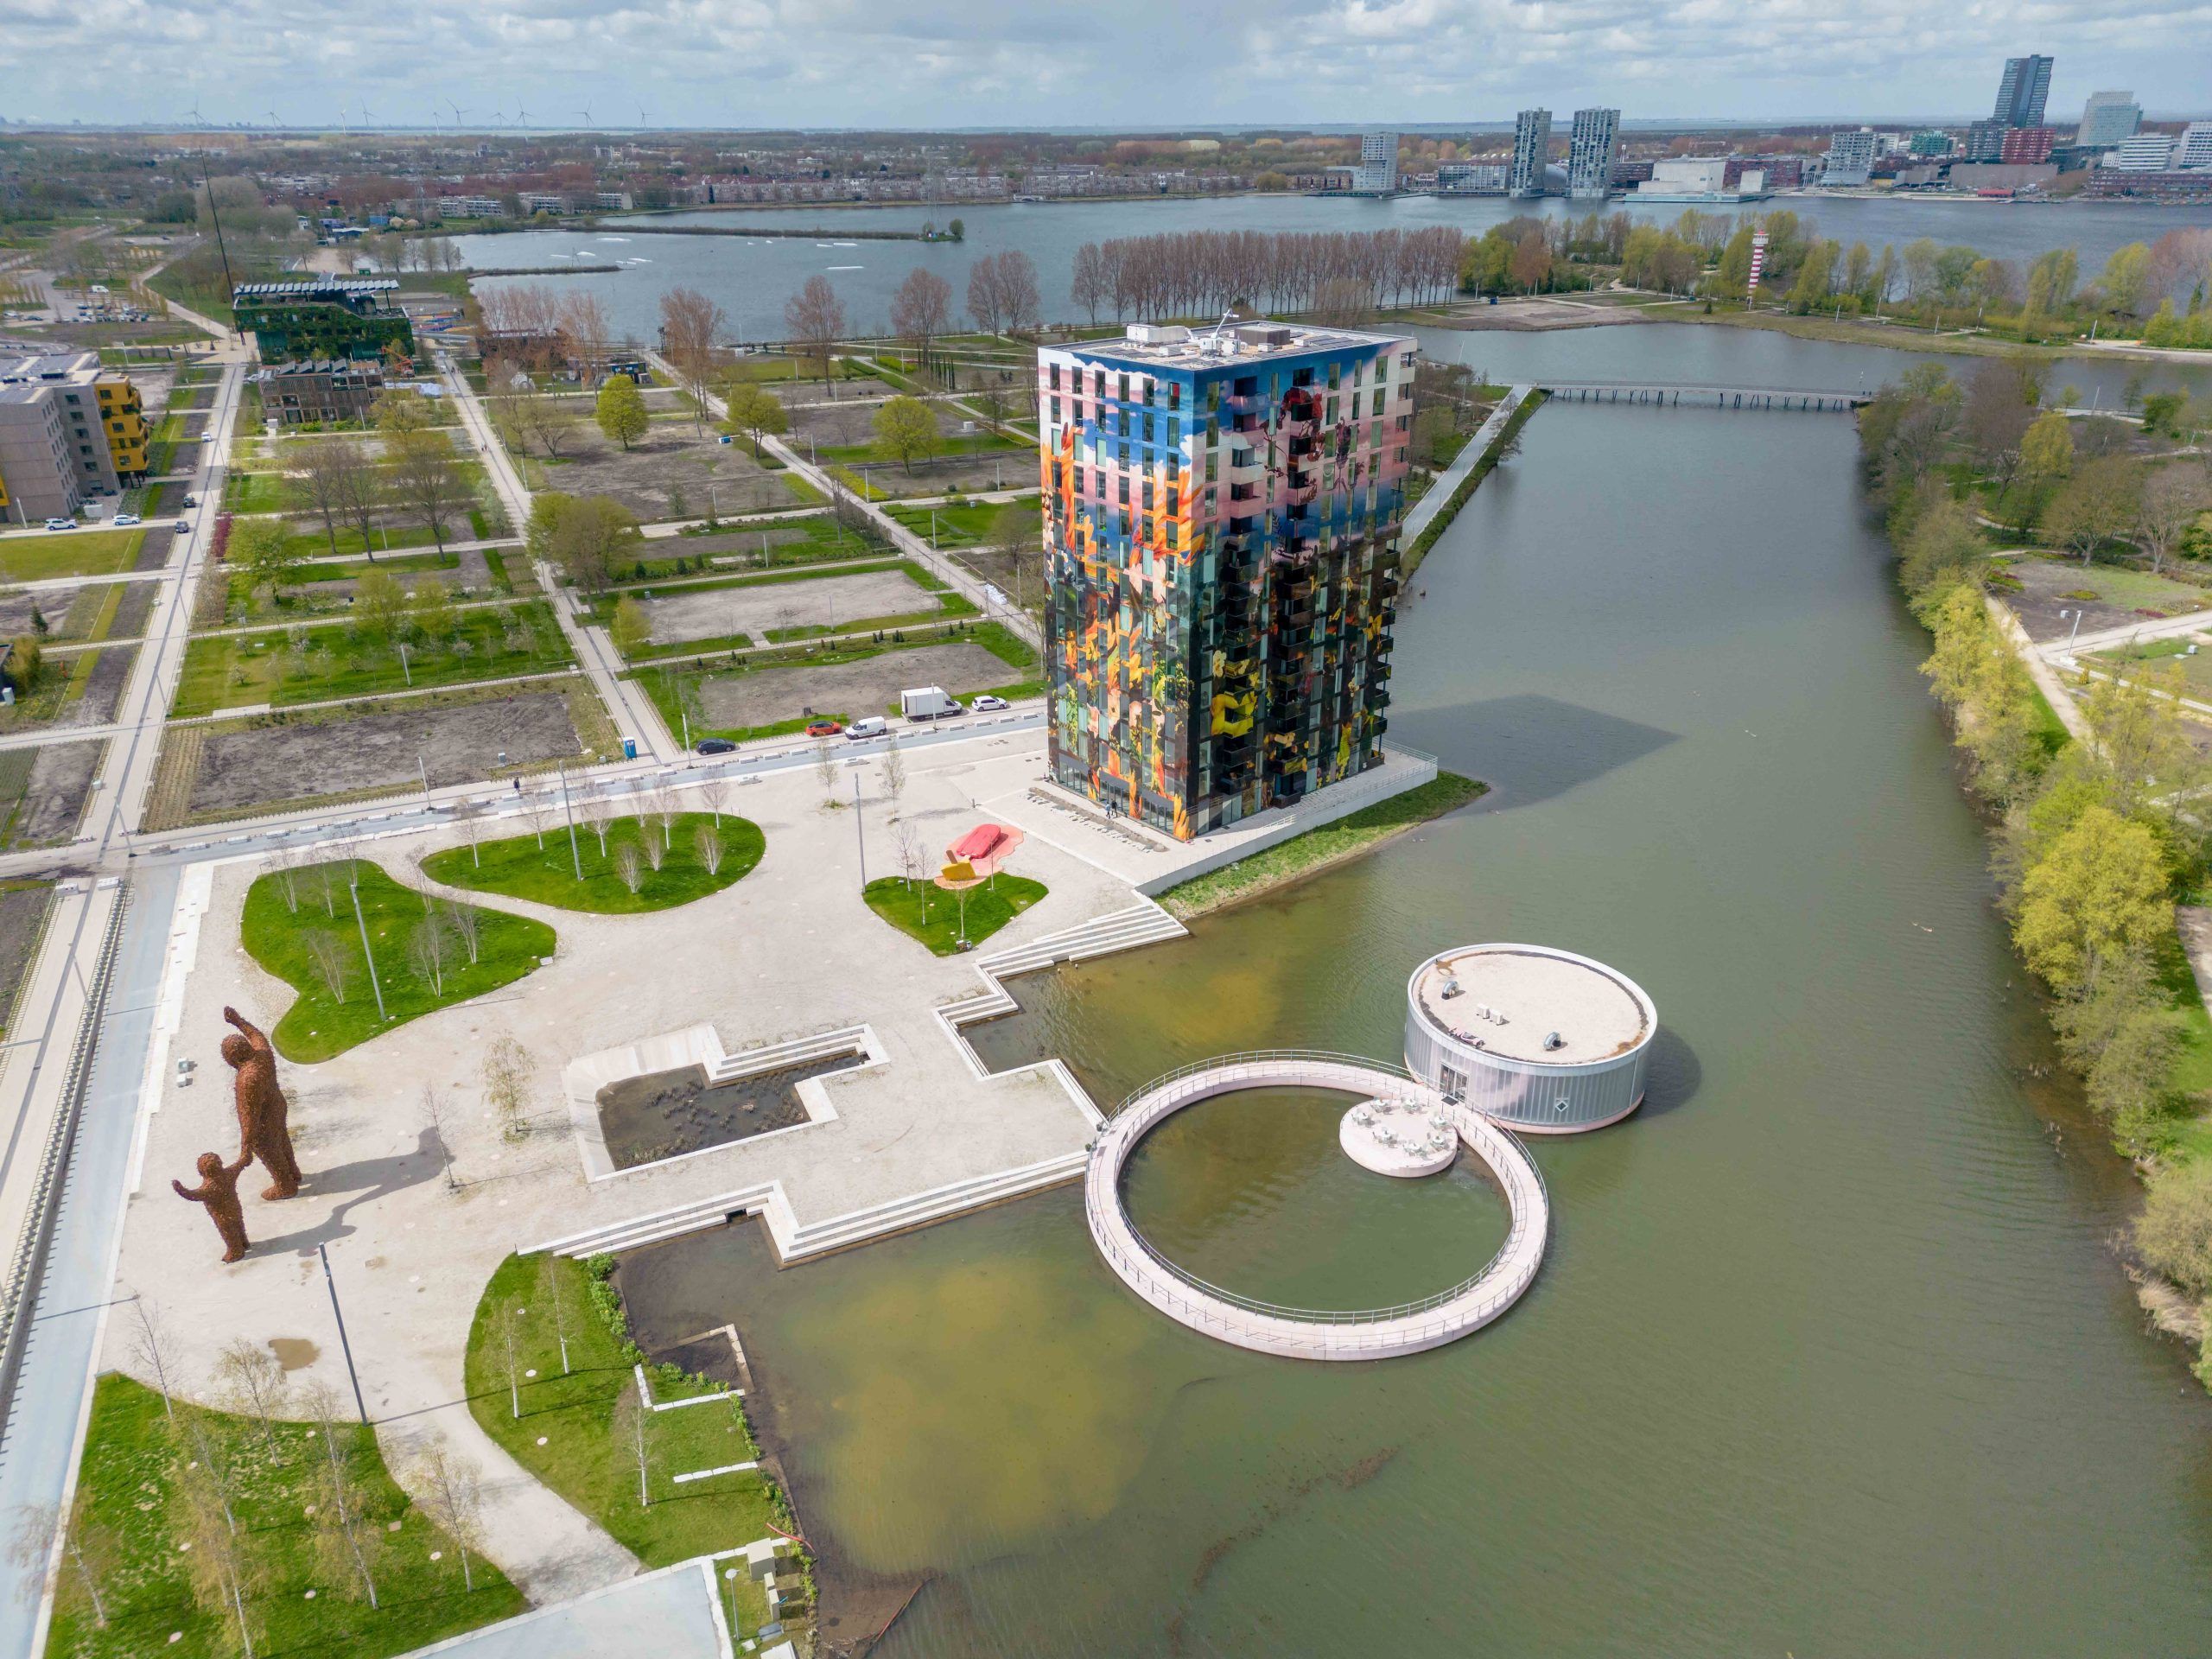 een drone foto vanuit hoog in de lucht die de skyline van Almere toont op de achtergrond, met daarvoor een grote kleurige woontoren en het ronde paviljoen van M. in het water.